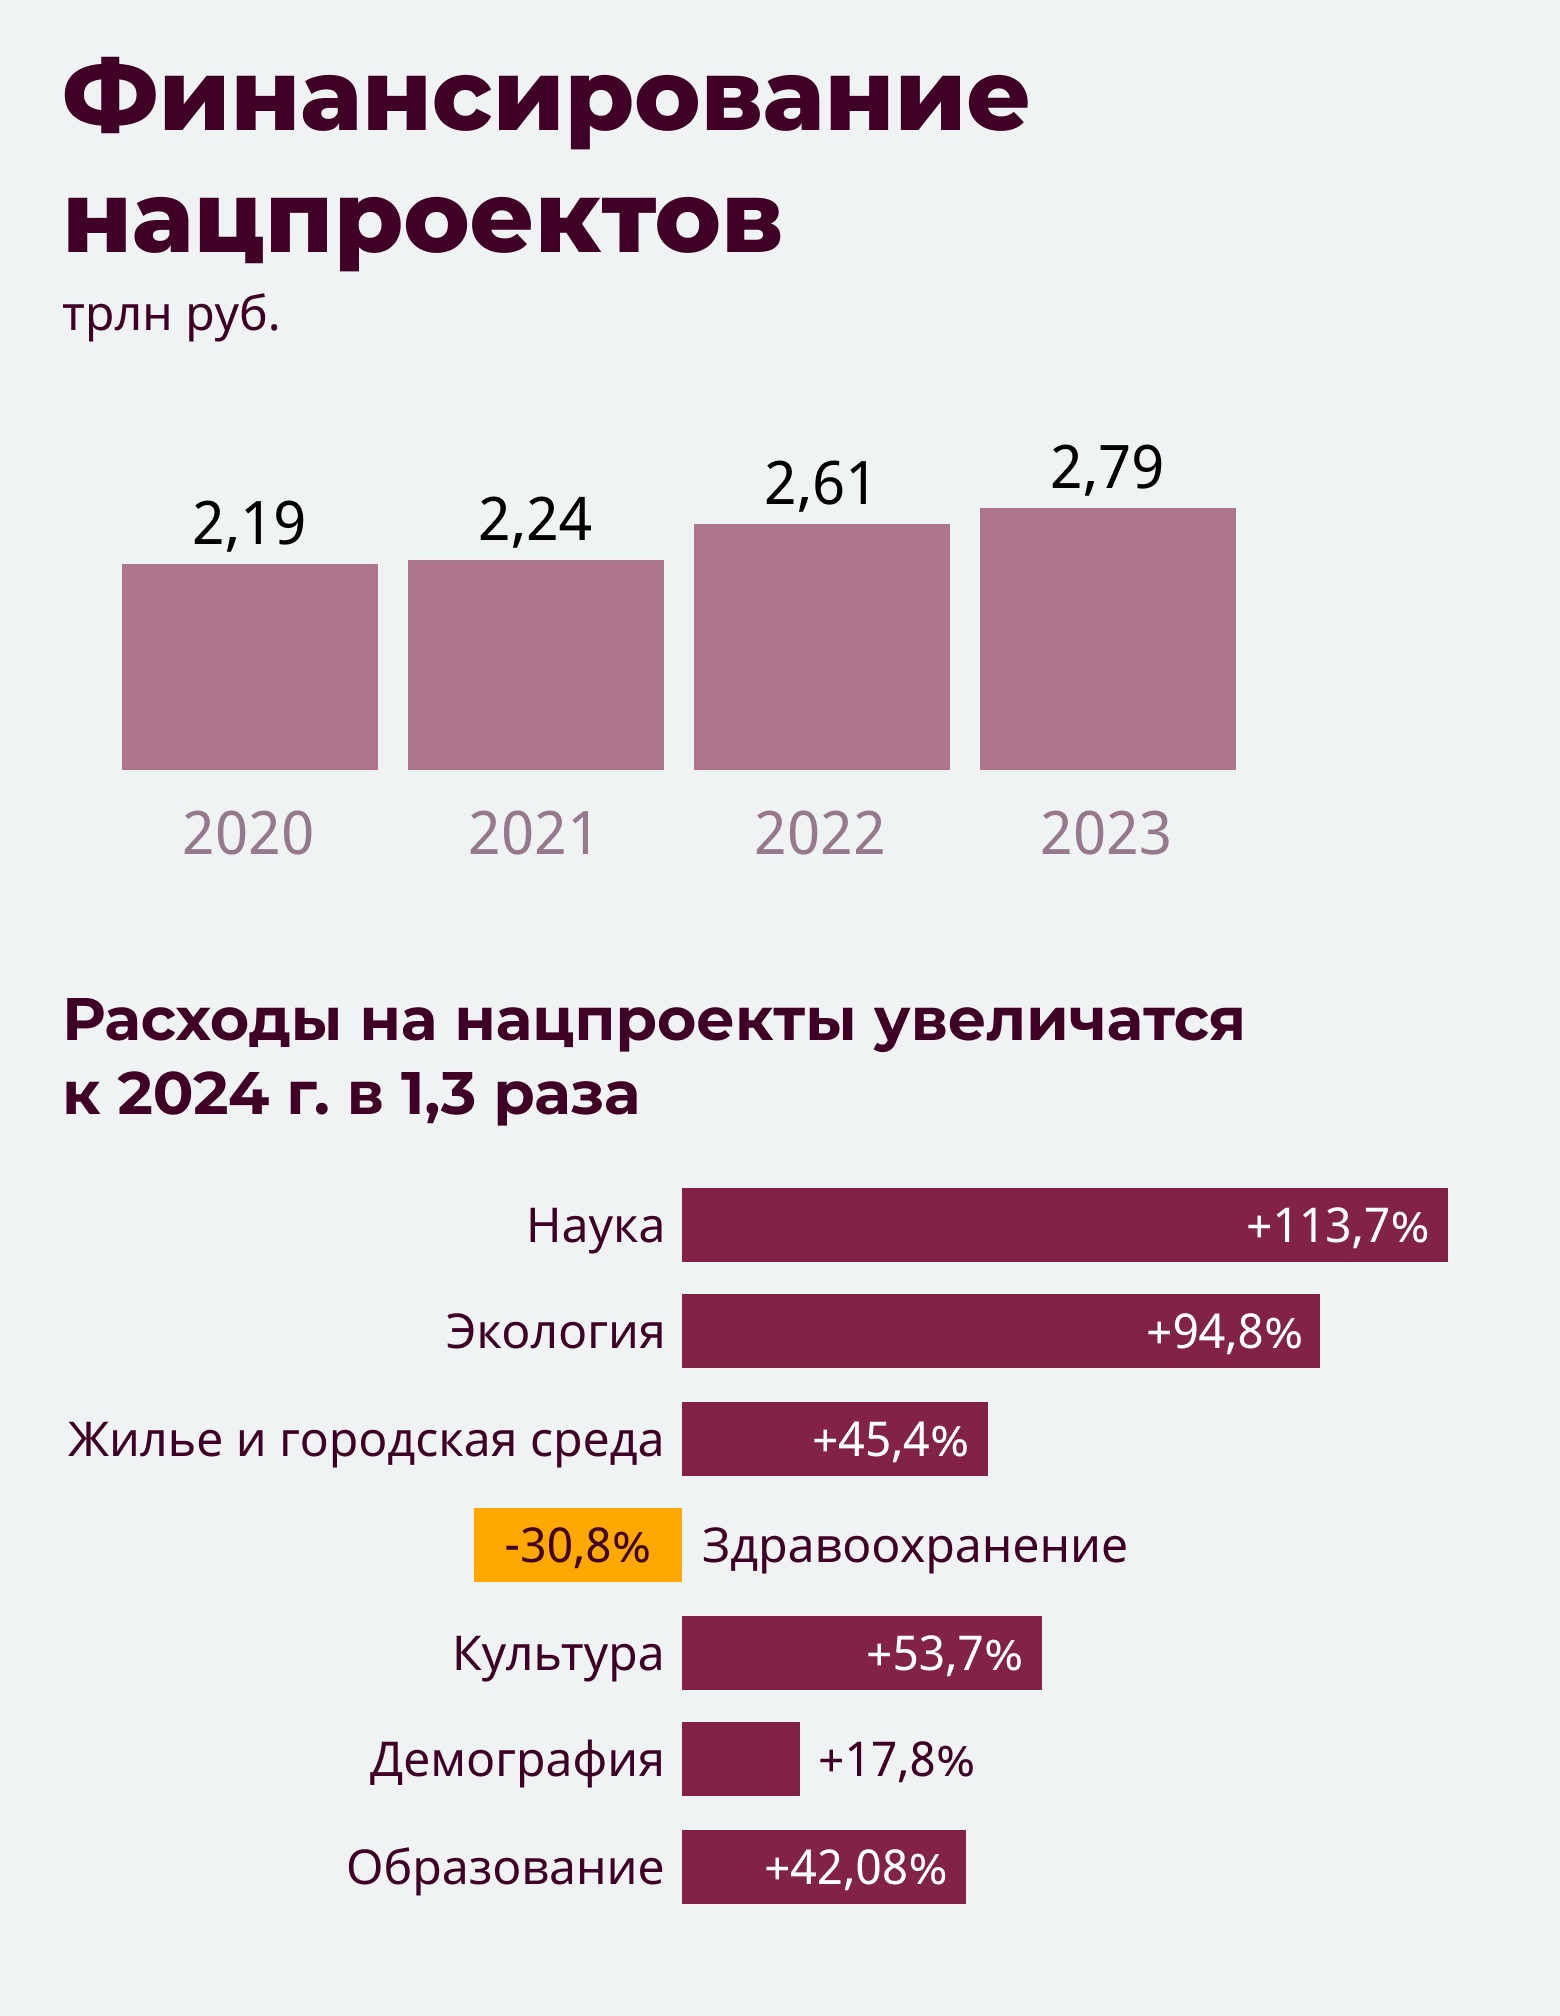 Правительство россии одобрило проект федерального бюджета на 2022-2024 годы. разбираем, каким он будет — регионы россии